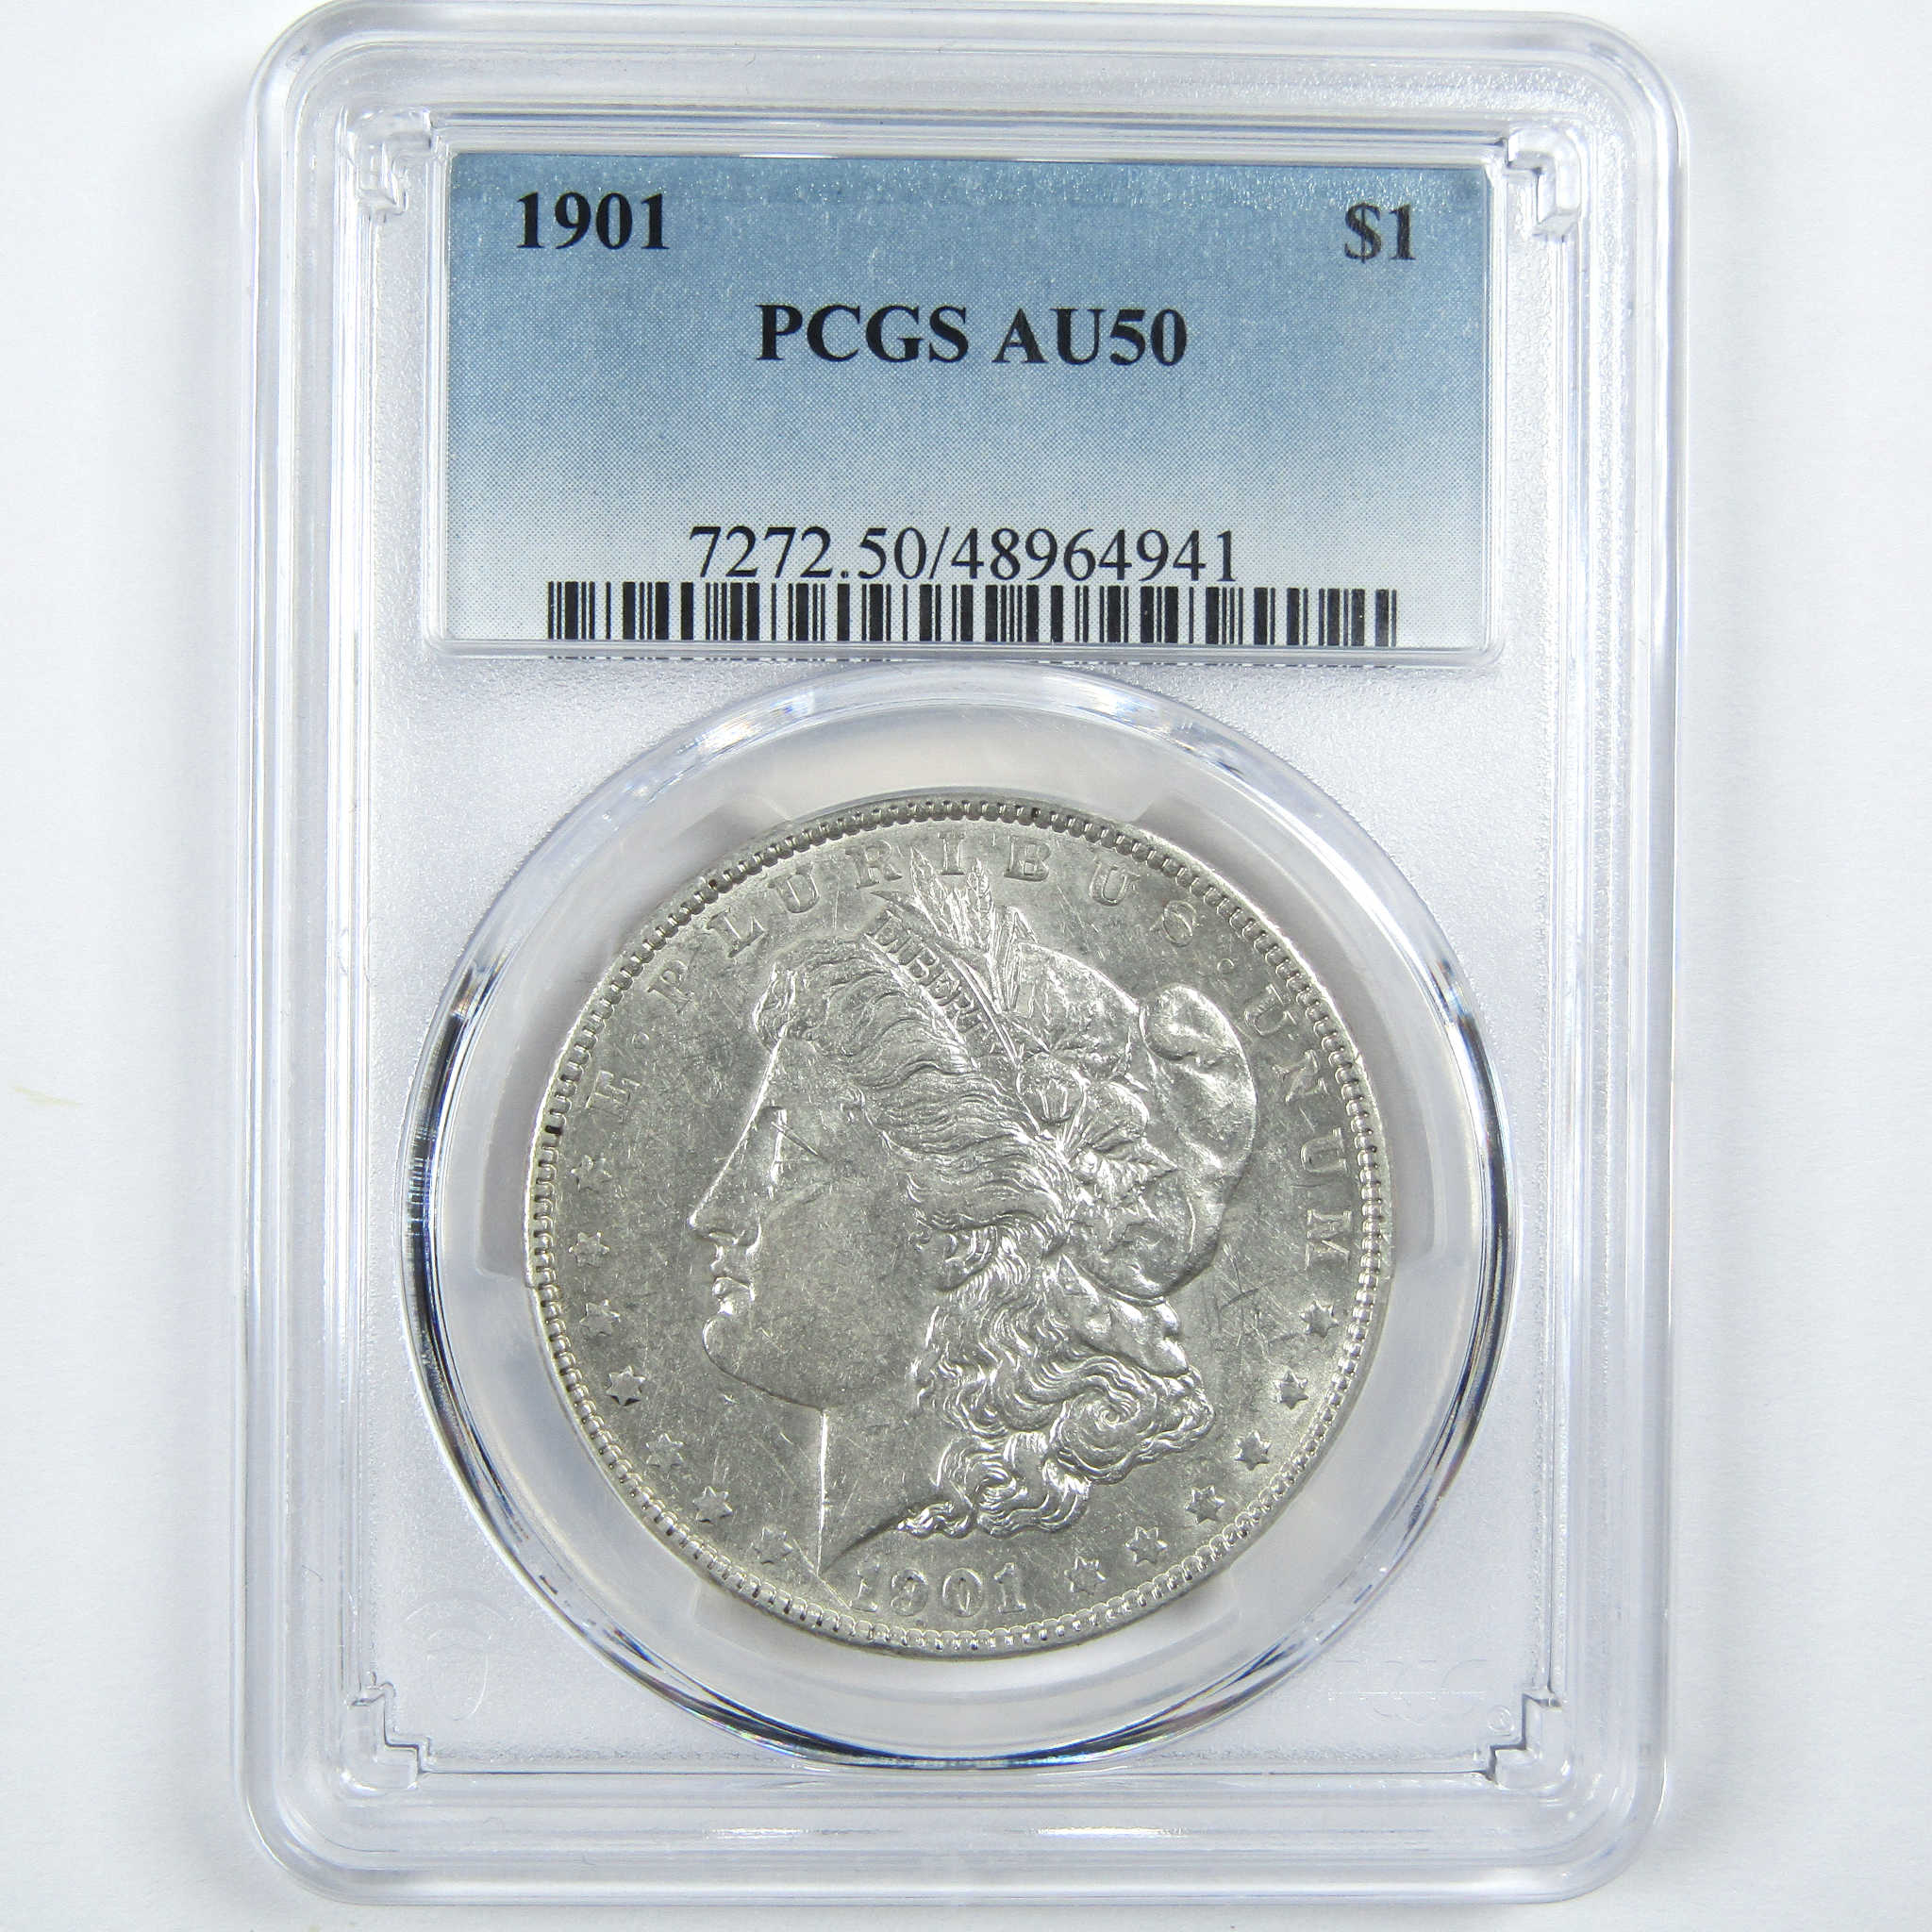 1901 Morgan Dollar AU 50 PCGS Silver $1 Coin SKU:I13078 - Morgan coin - Morgan silver dollar - Morgan silver dollar for sale - Profile Coins &amp; Collectibles